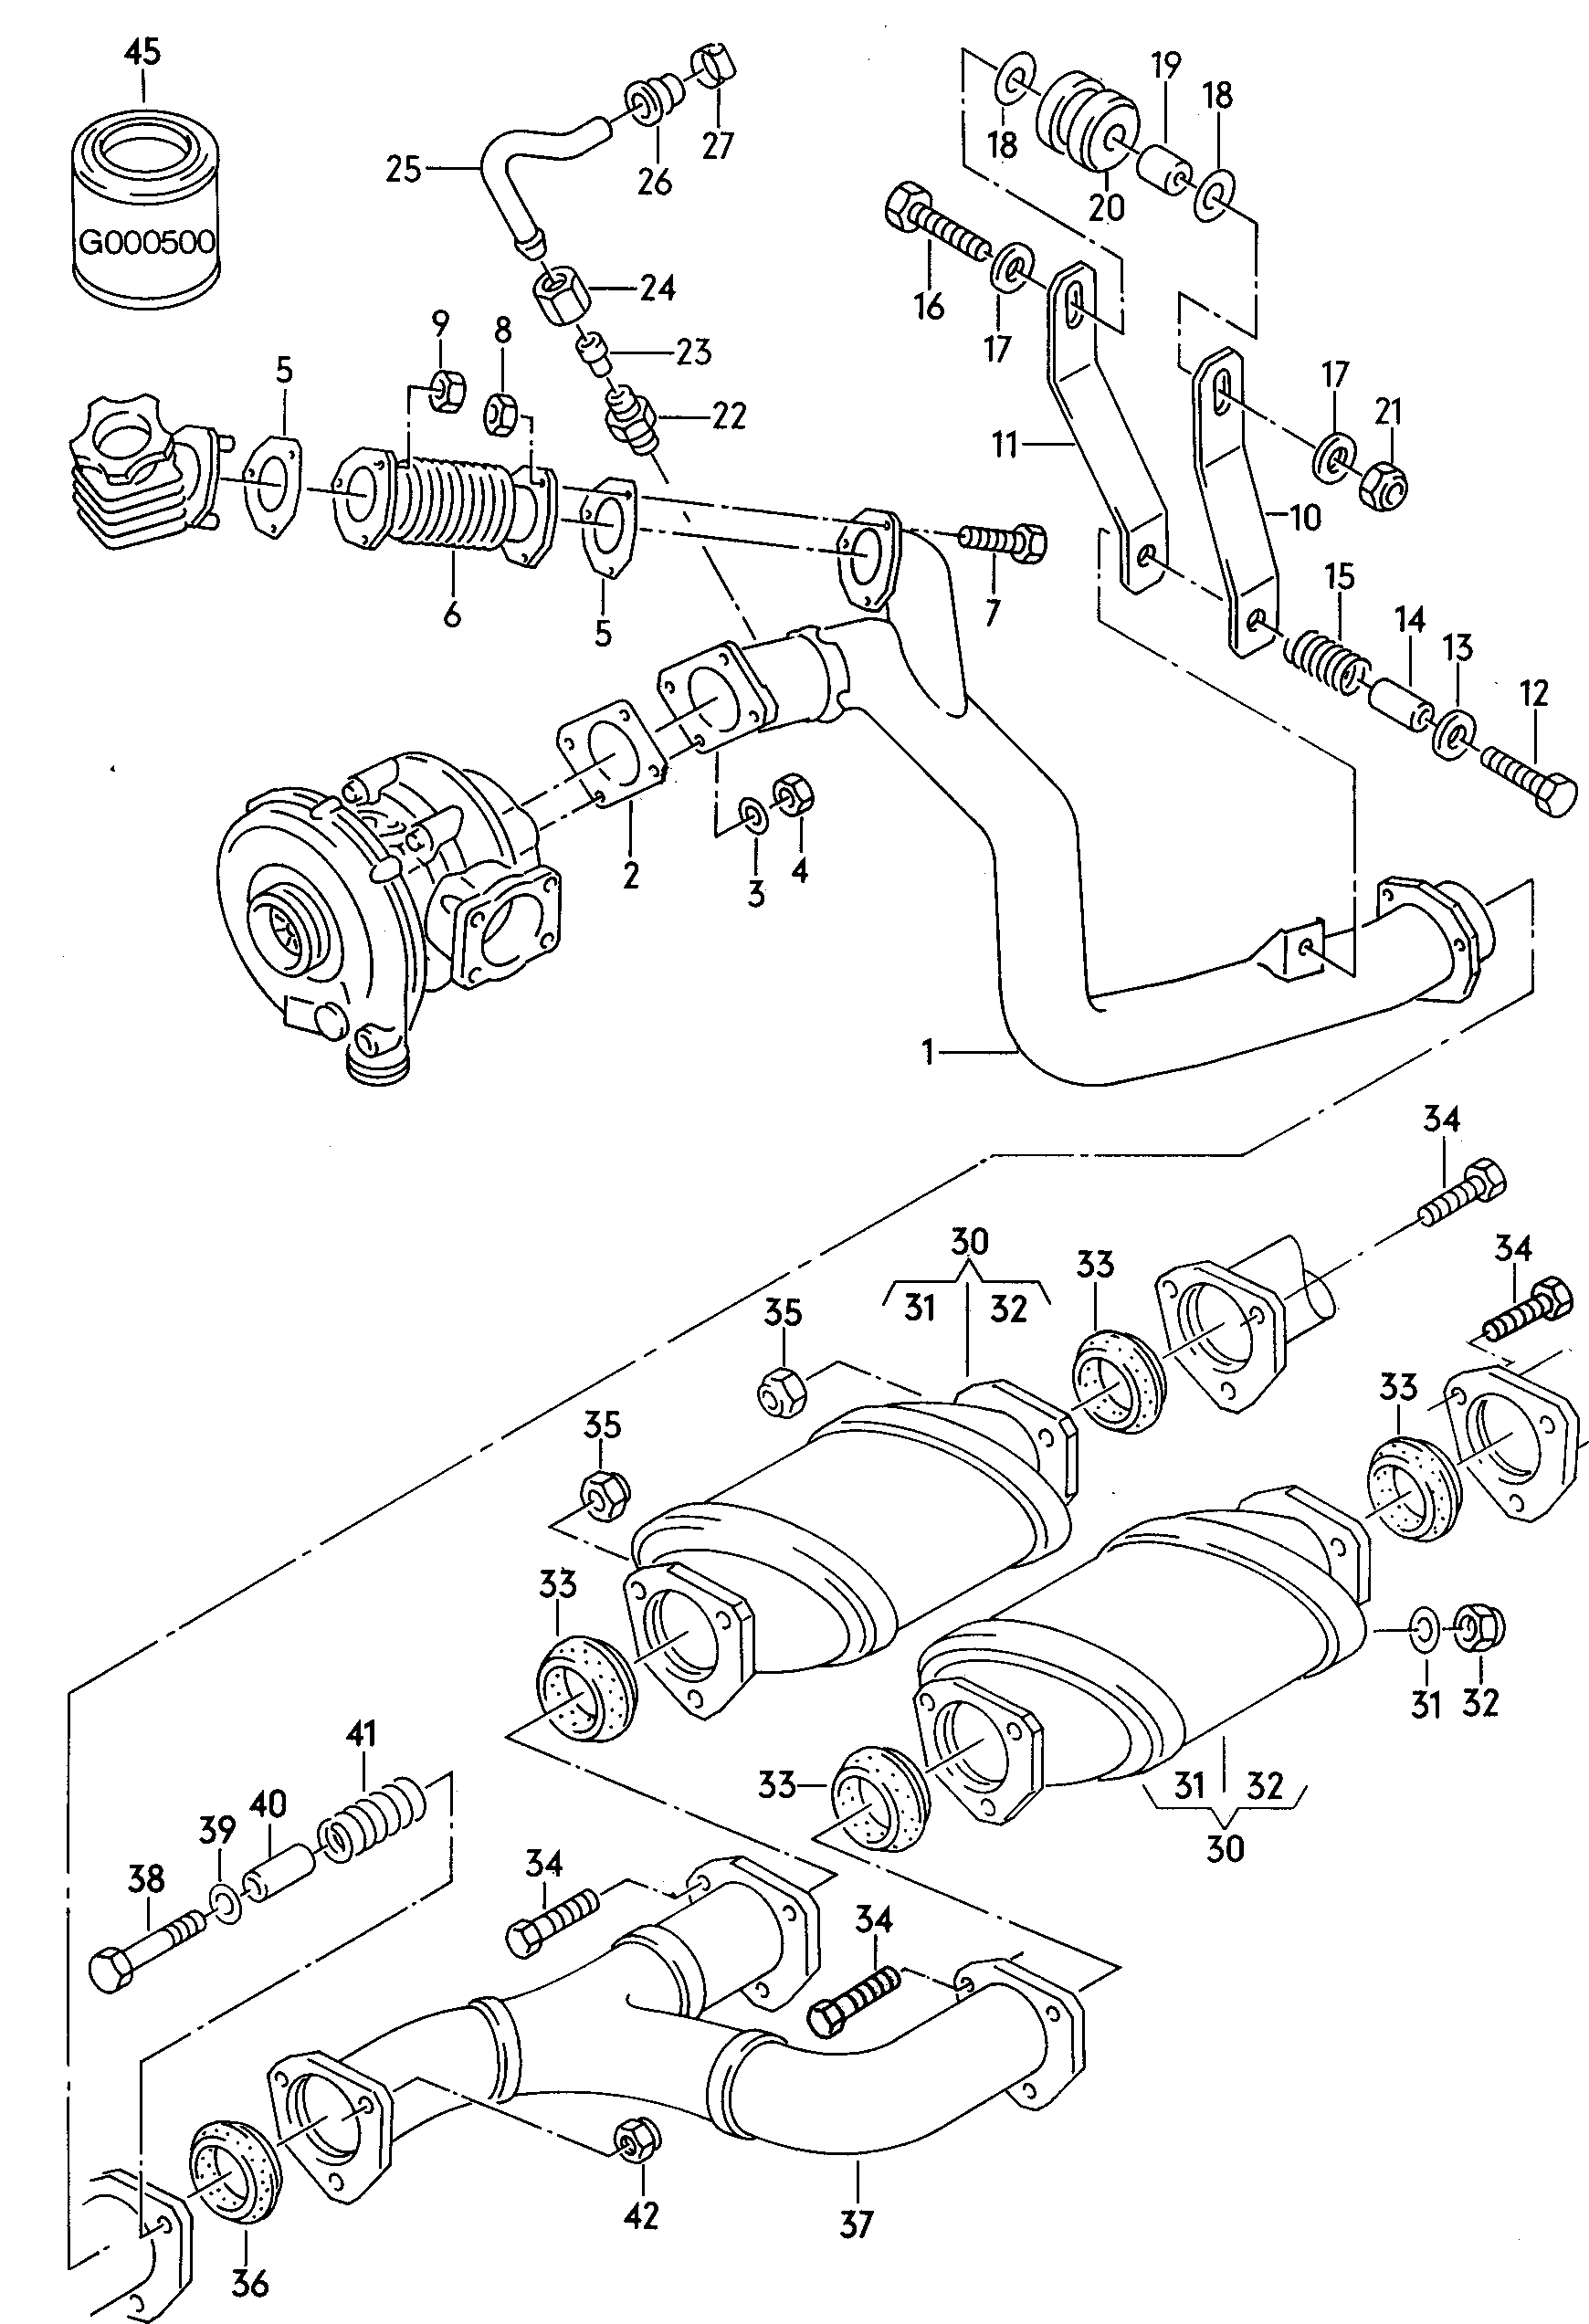 Intermediate pipeCatalytic converter  - Audi Coupe quattro - acoq